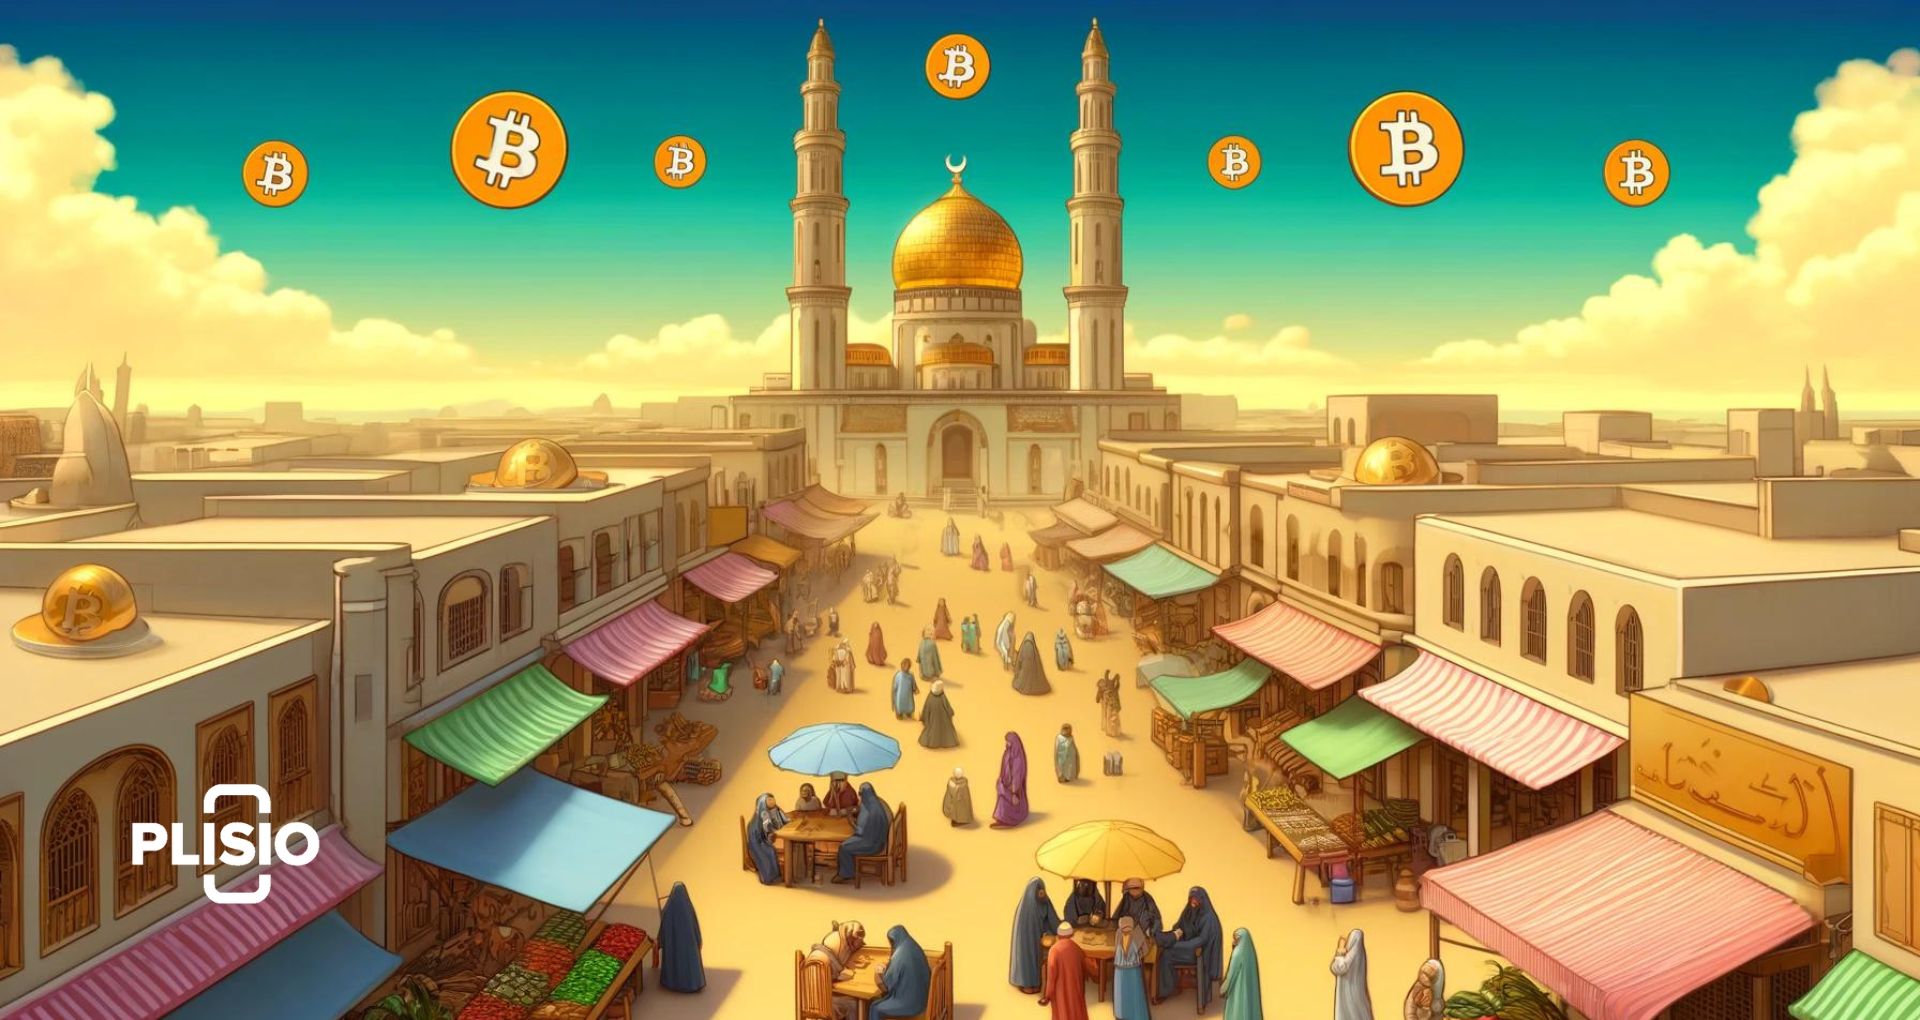 Bitcoin ฮาลาลหรือไม่? Cryptocurrency ยืนอยู่ตรงไหนในโลกมุสลิม?